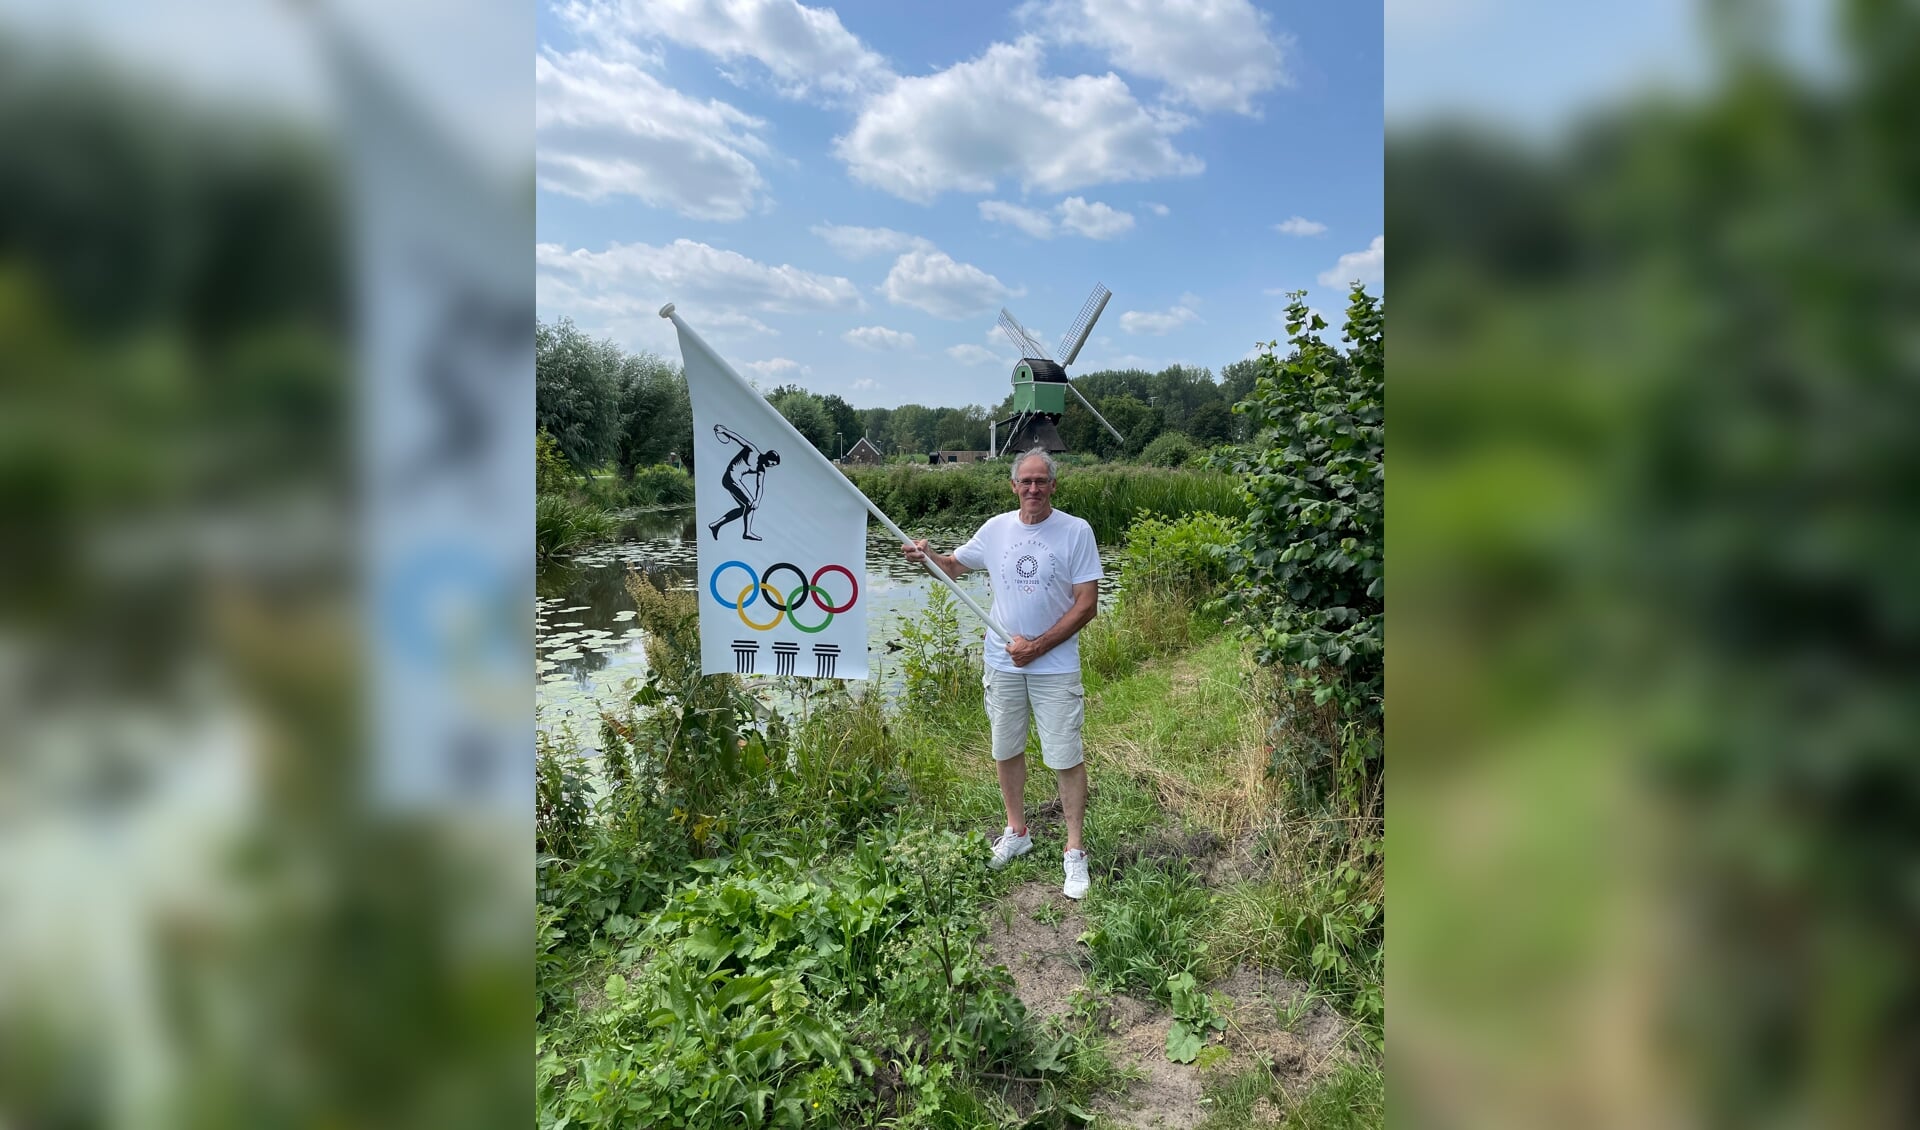 Cees met zijn unieke Olympische vlag, liefst was hij op de atletiekbaan op de foto gegaan